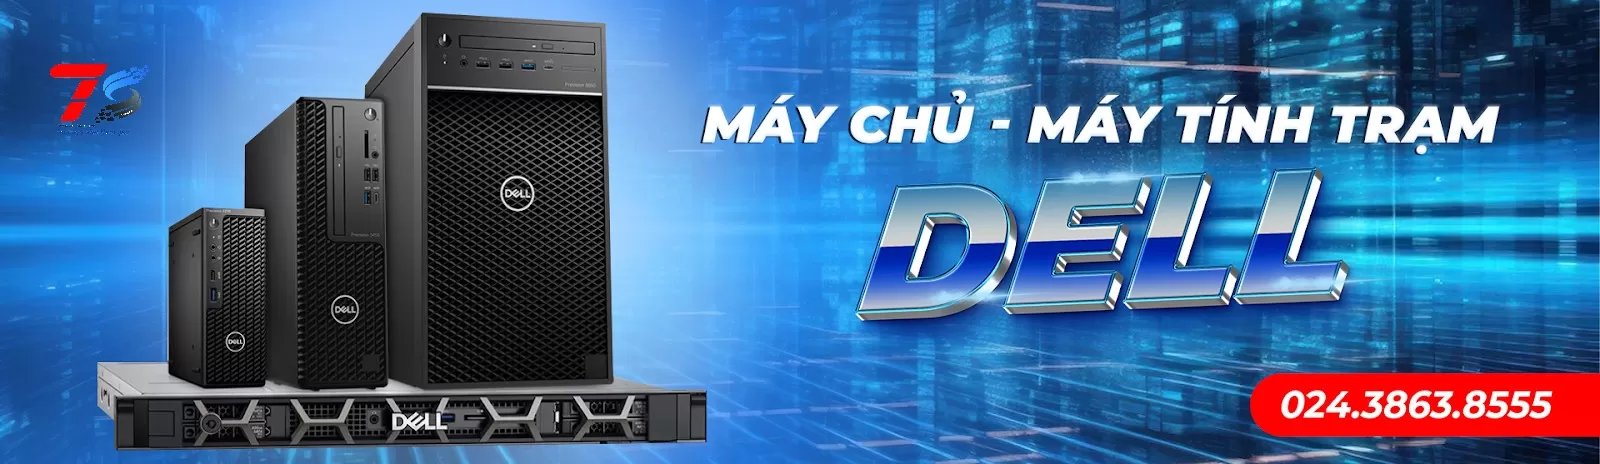 Nhà phân phối máy chủ Dell chính hãng - máy chủ Server Dell uy tín